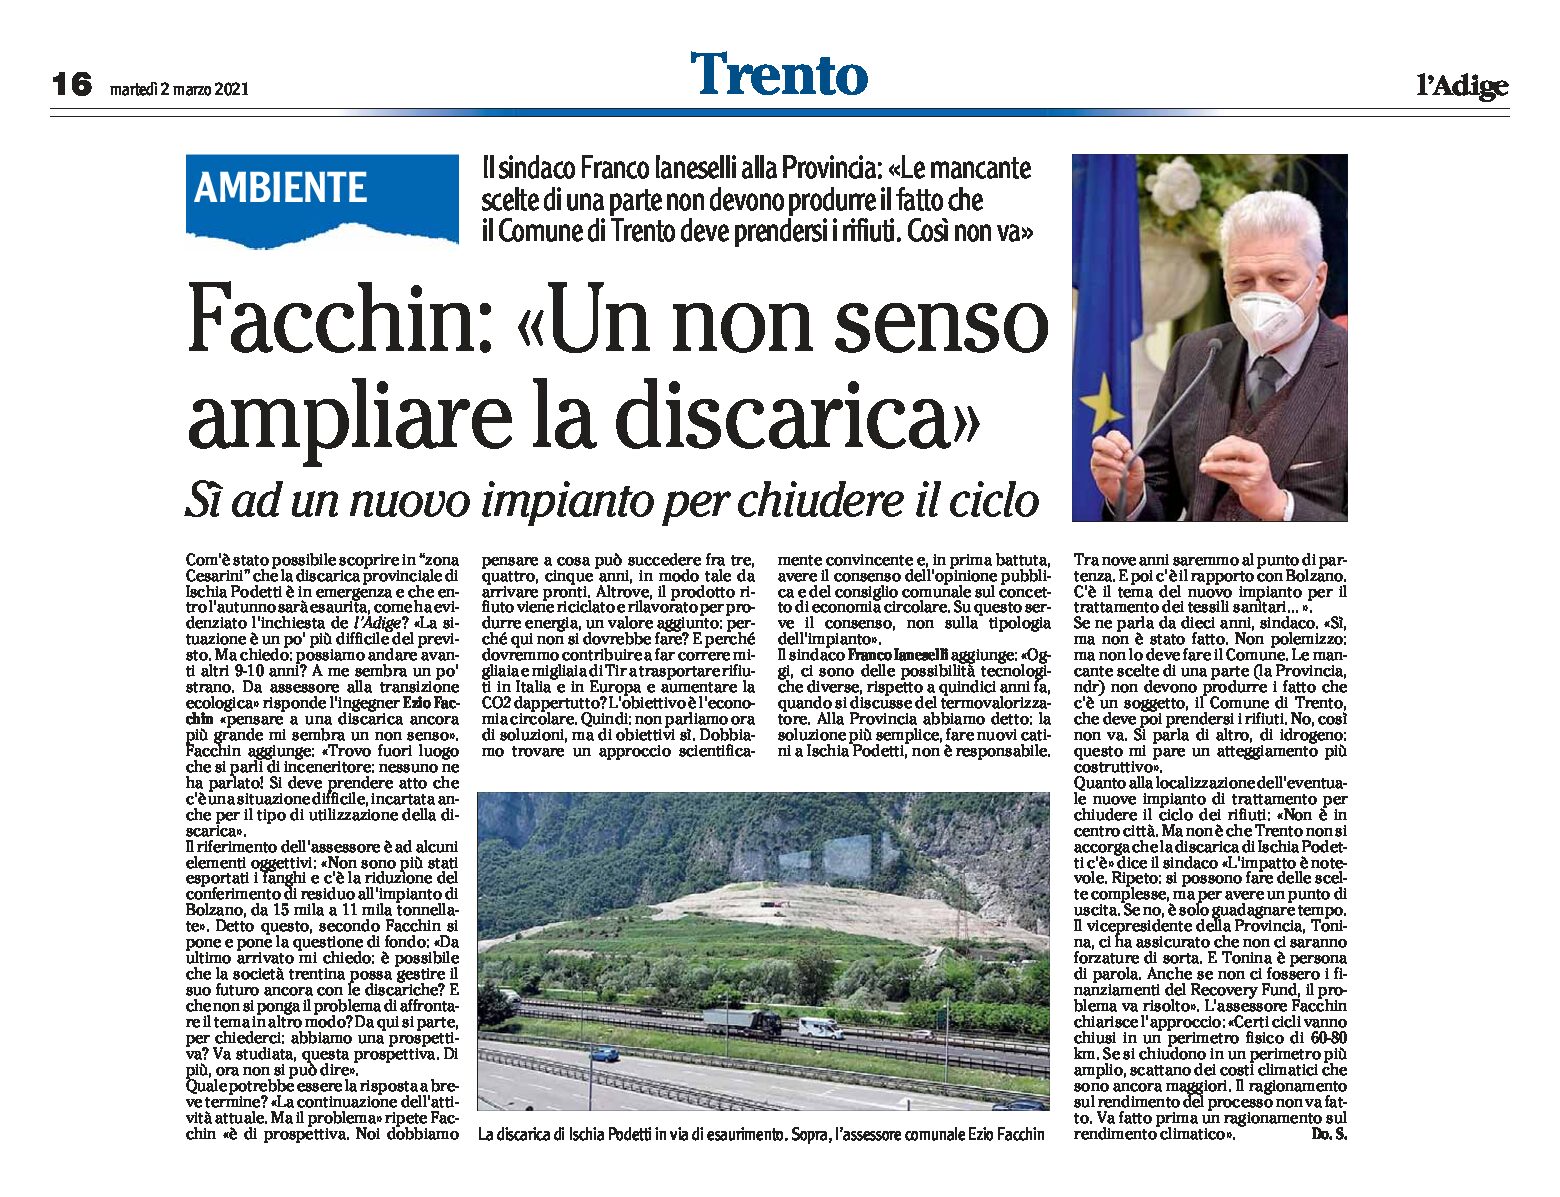 Trento, Ischia Podetti: Facchin “un non senso ampliare la discarica”